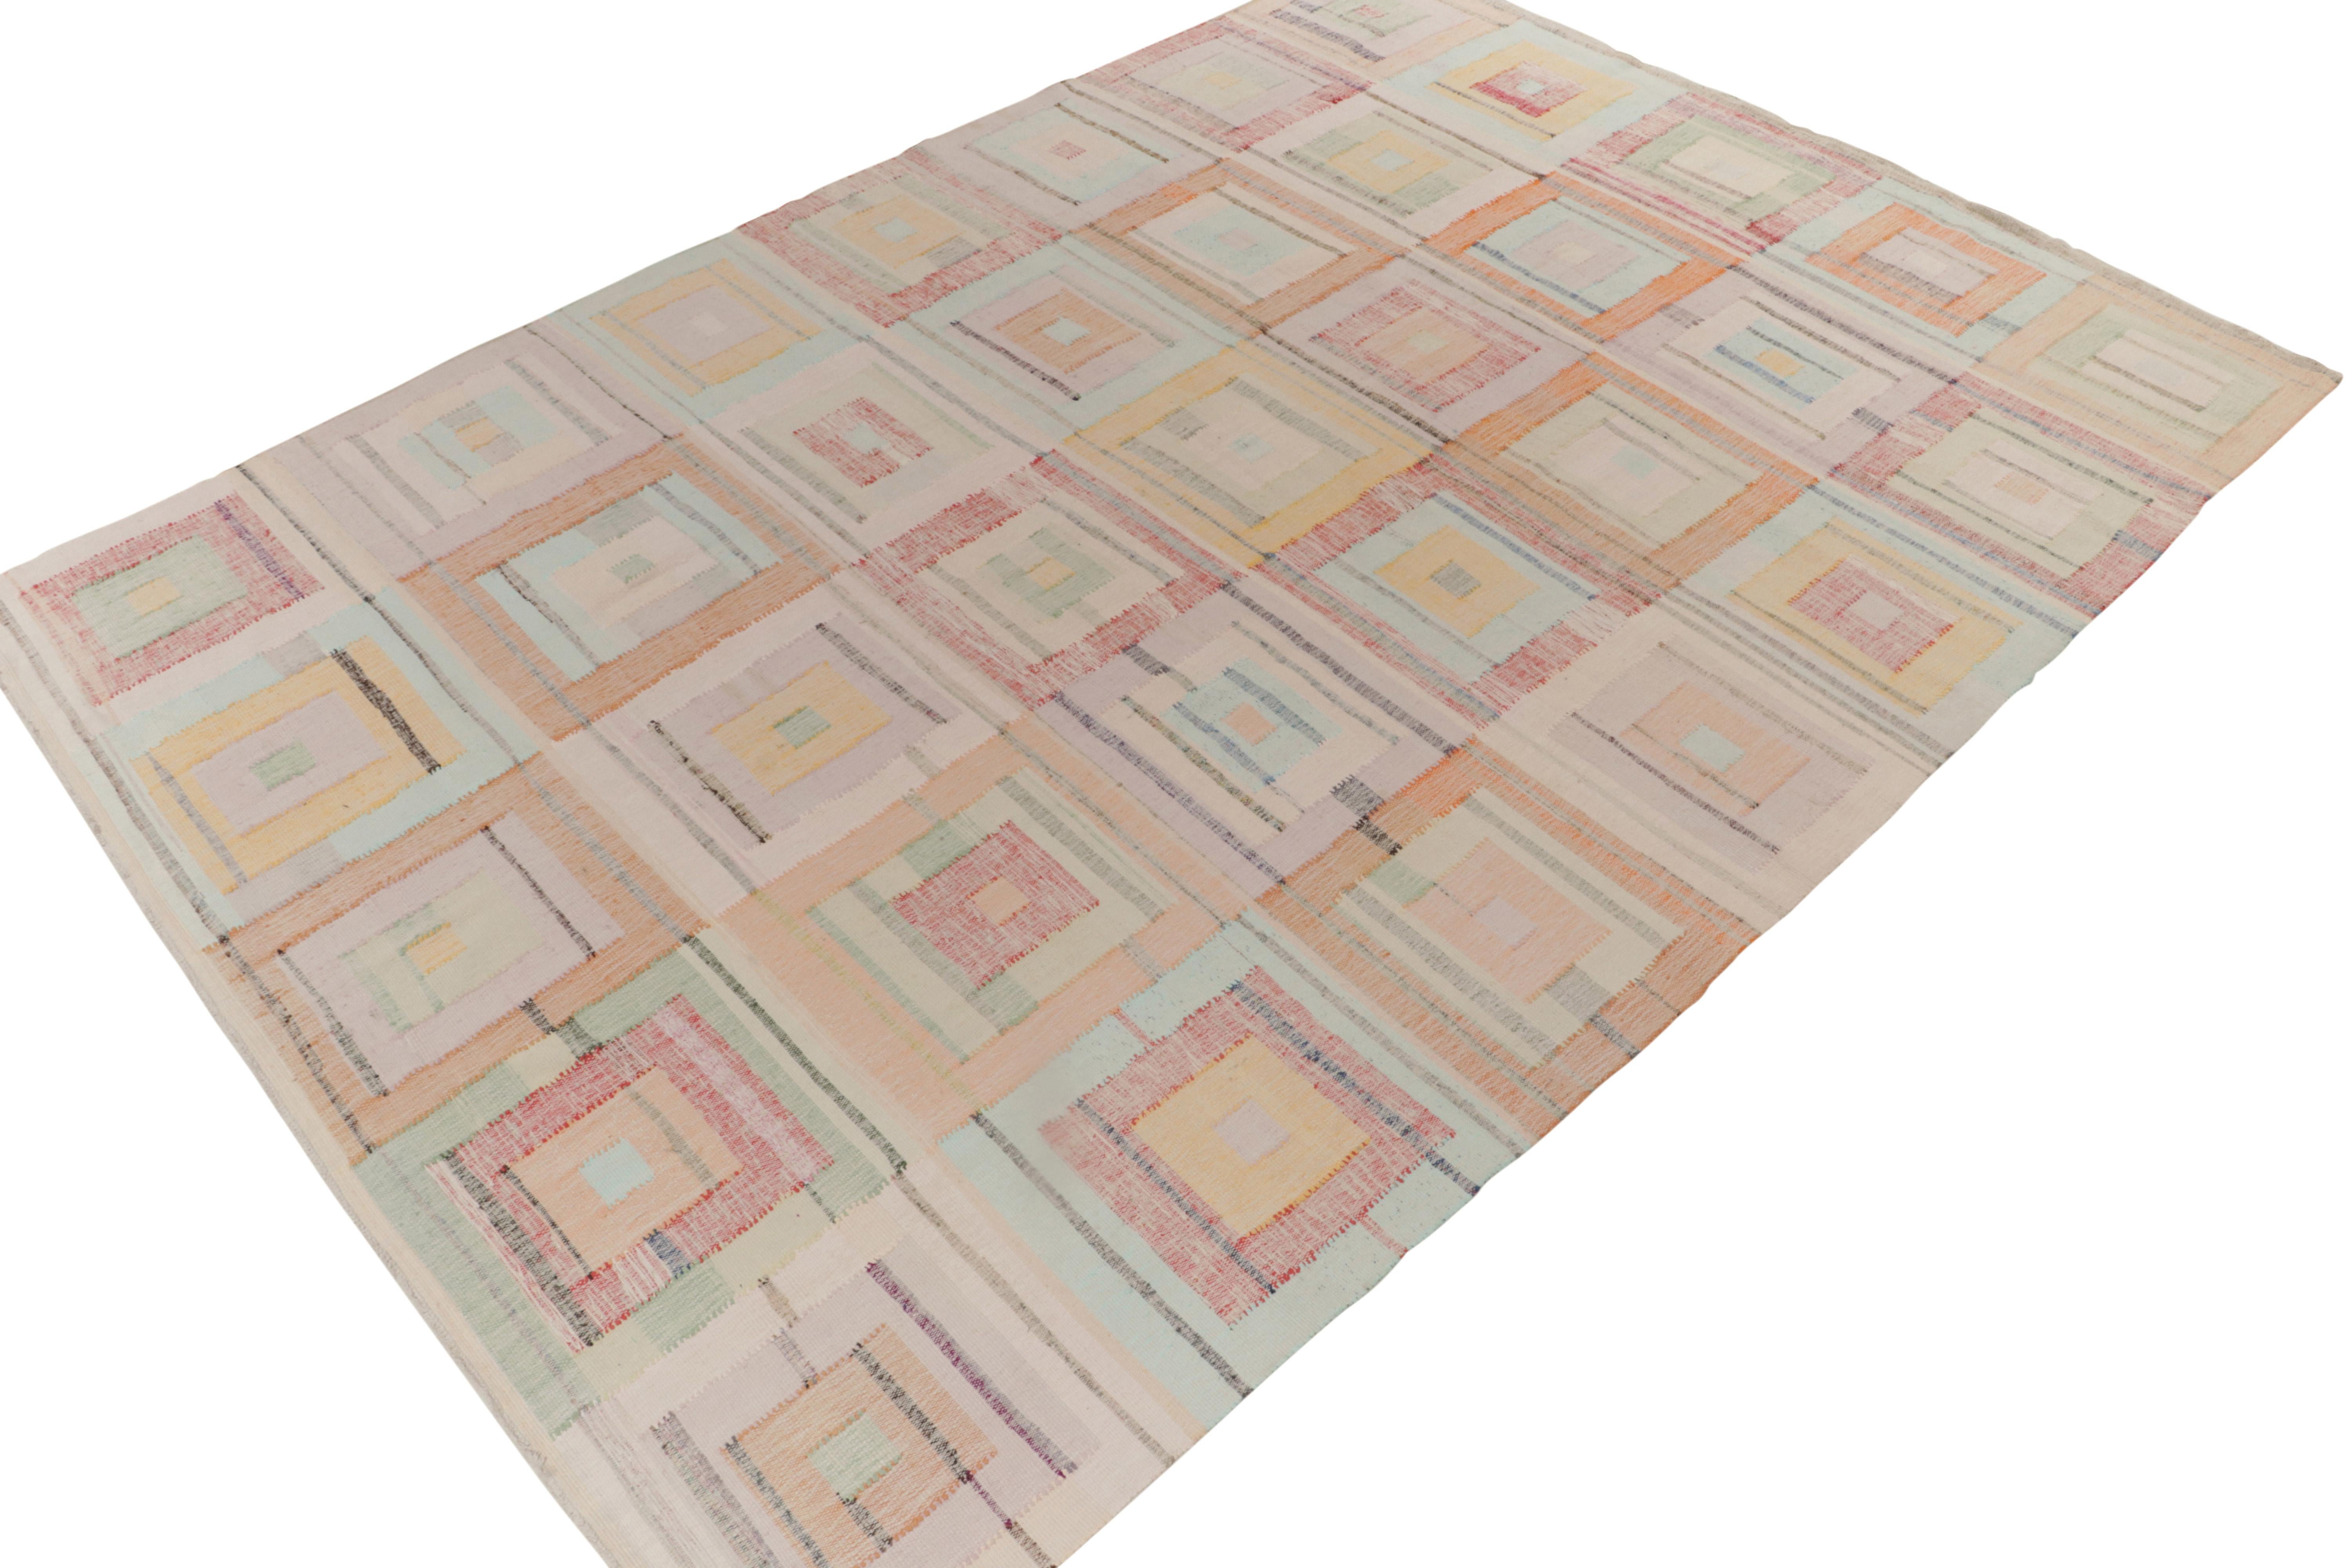 Issu de notre distinguée collection de patchwork, un tapis kilim contemporain de 10x14 fabriqué en réutilisant des fils vintage dans de nouveaux motifs. 

Subtilement inspiré des classiques, ce tapis bénéficie d'un tout nouveau look avec les mêmes